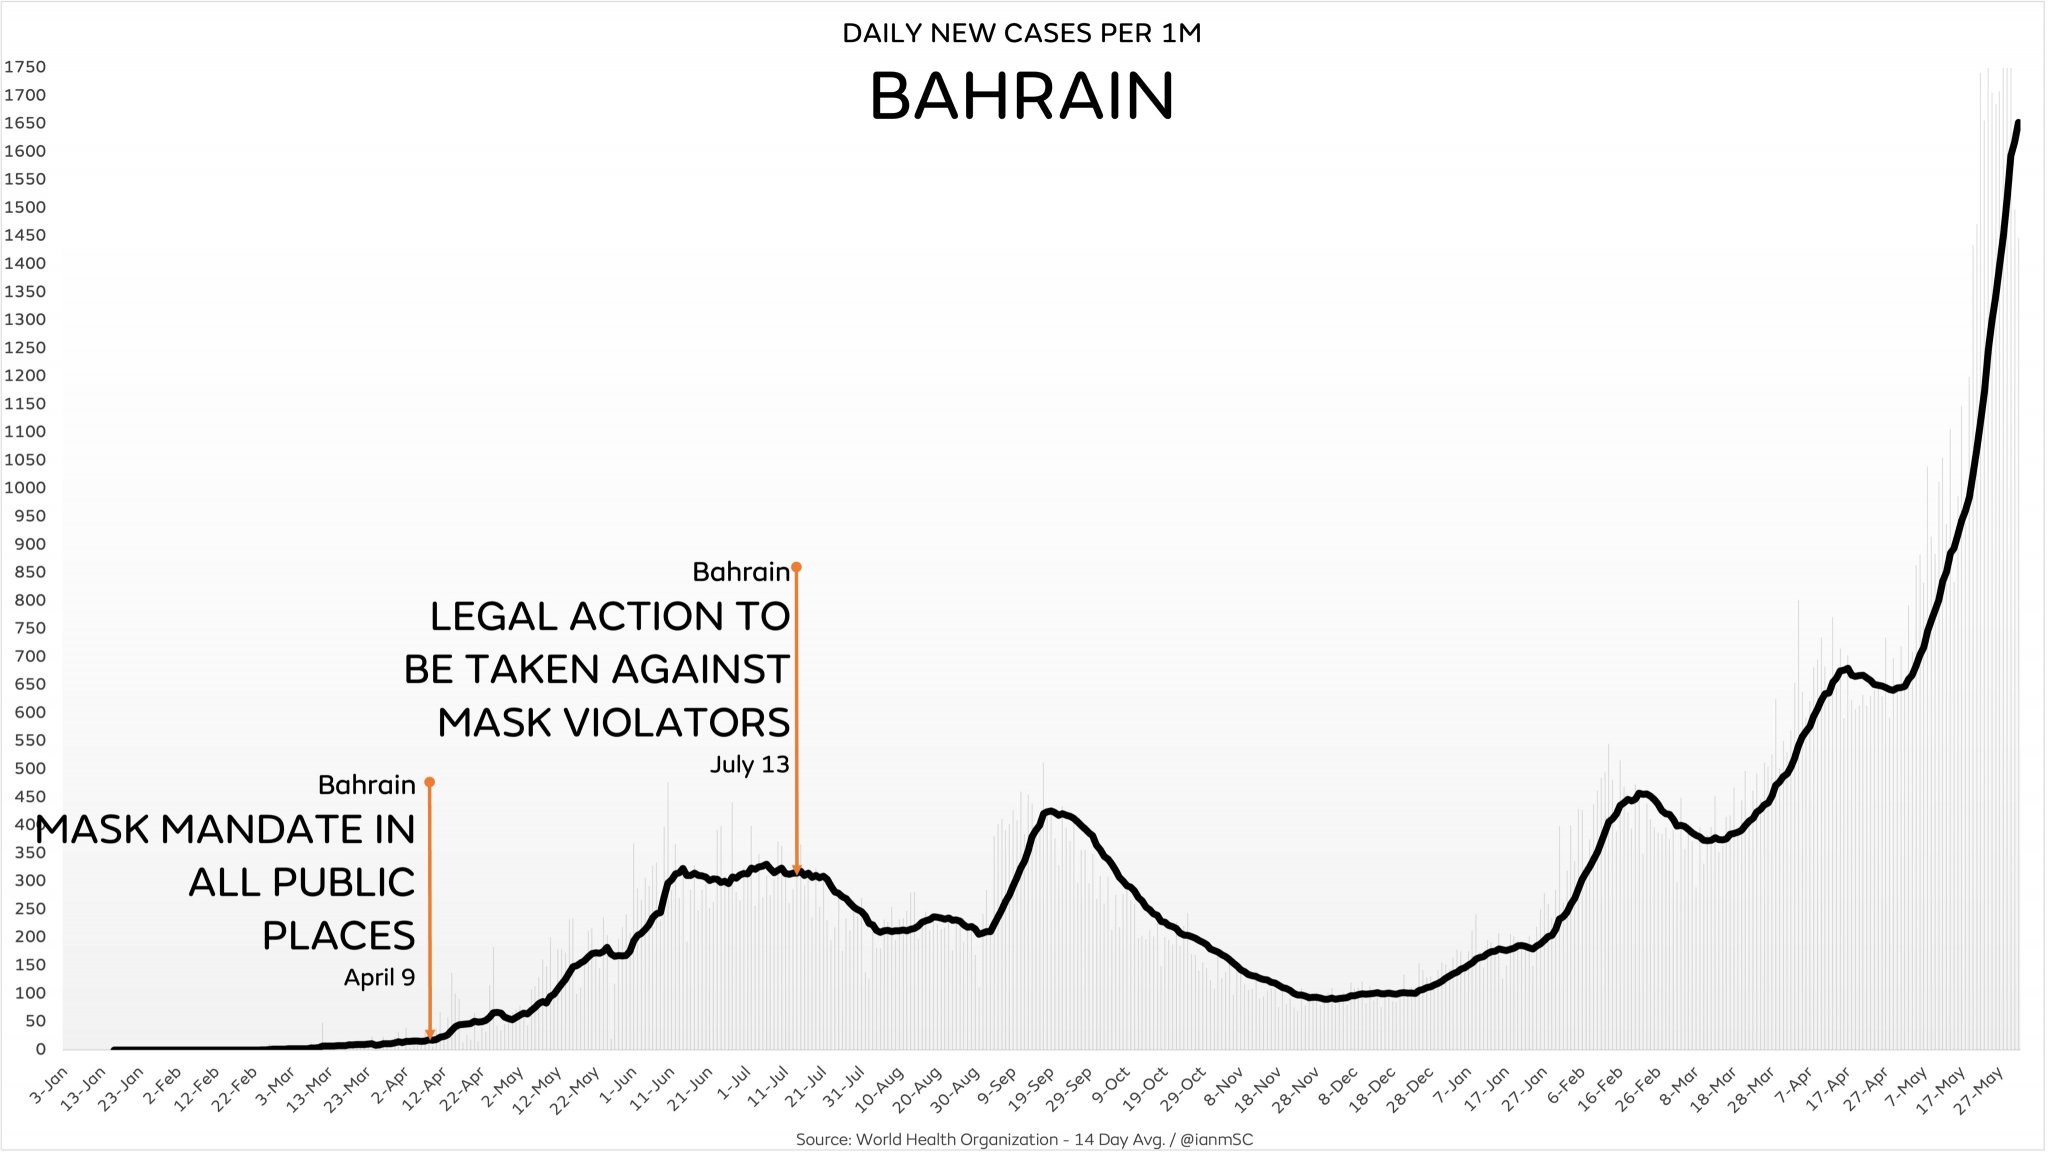 BahrainMasks.jpg